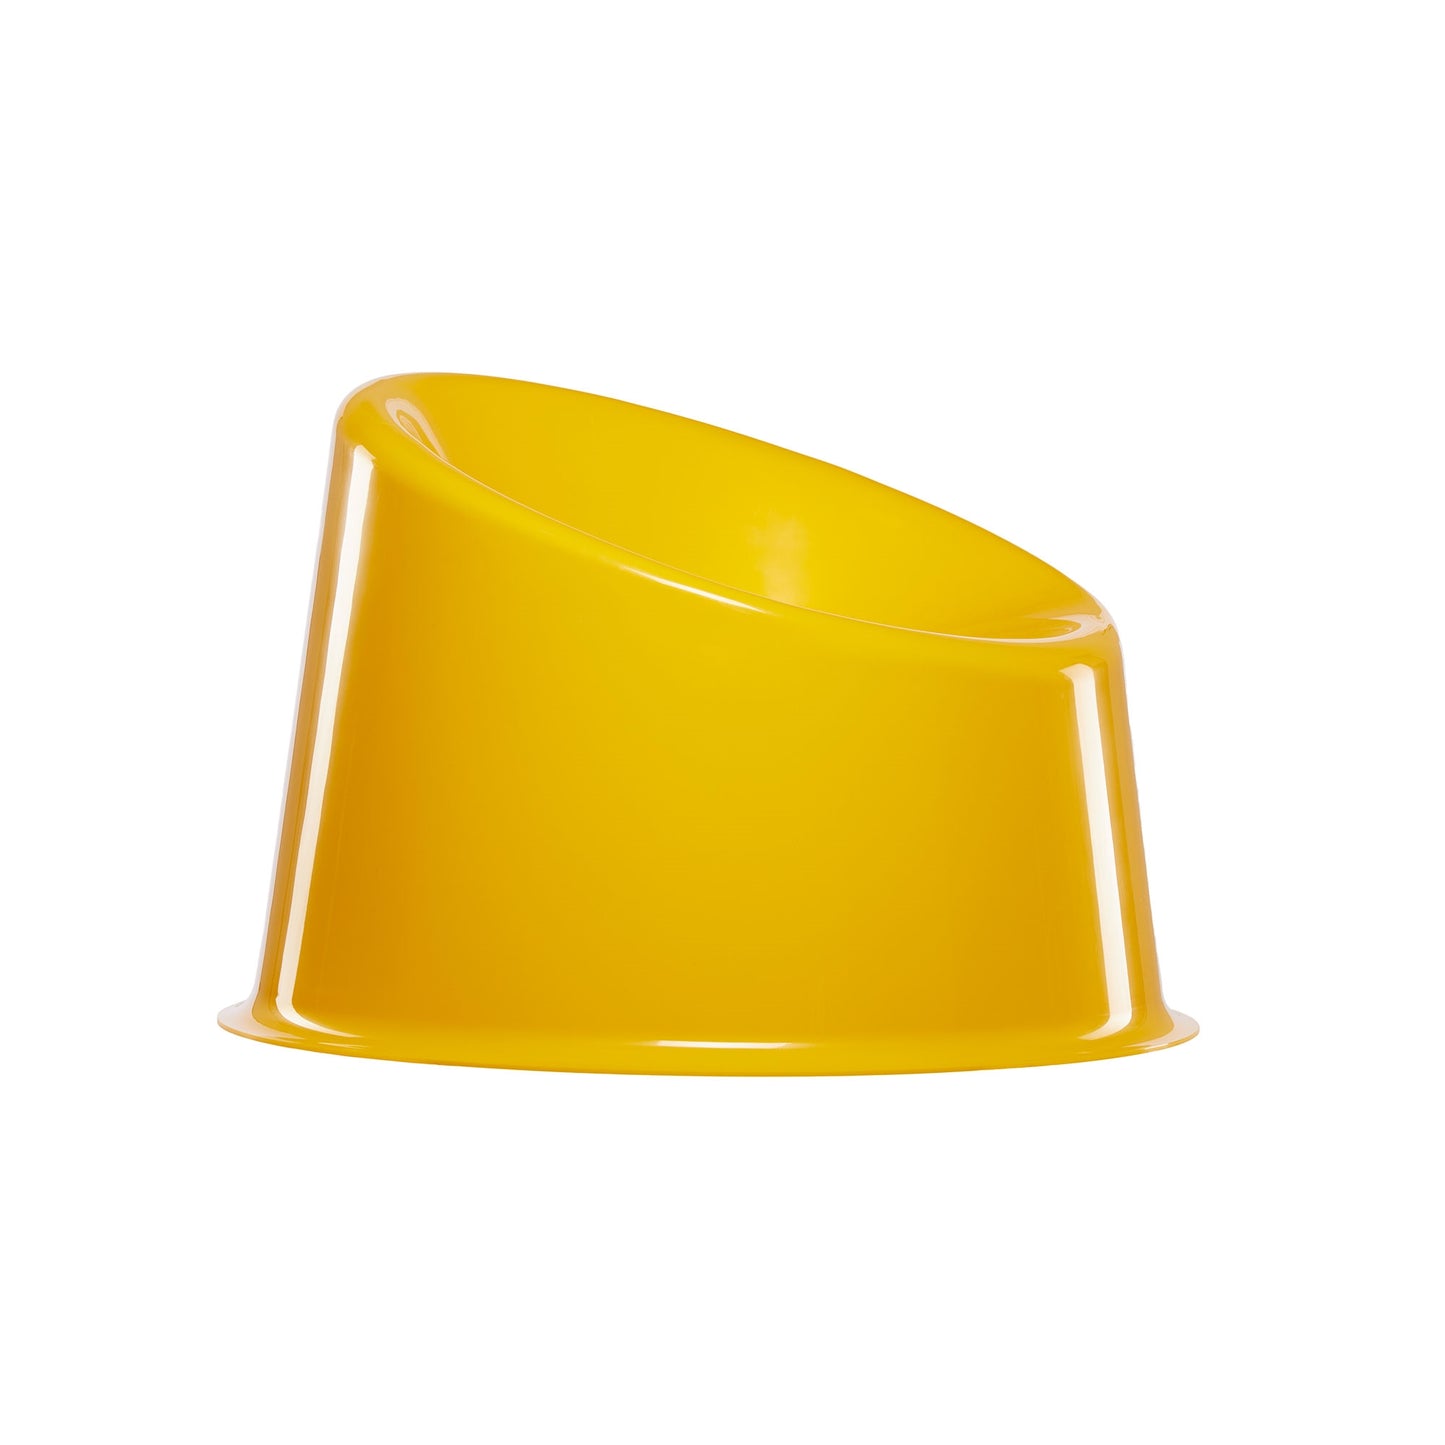 Verpan Panto Pop Chair by Verner Panton #Yellow